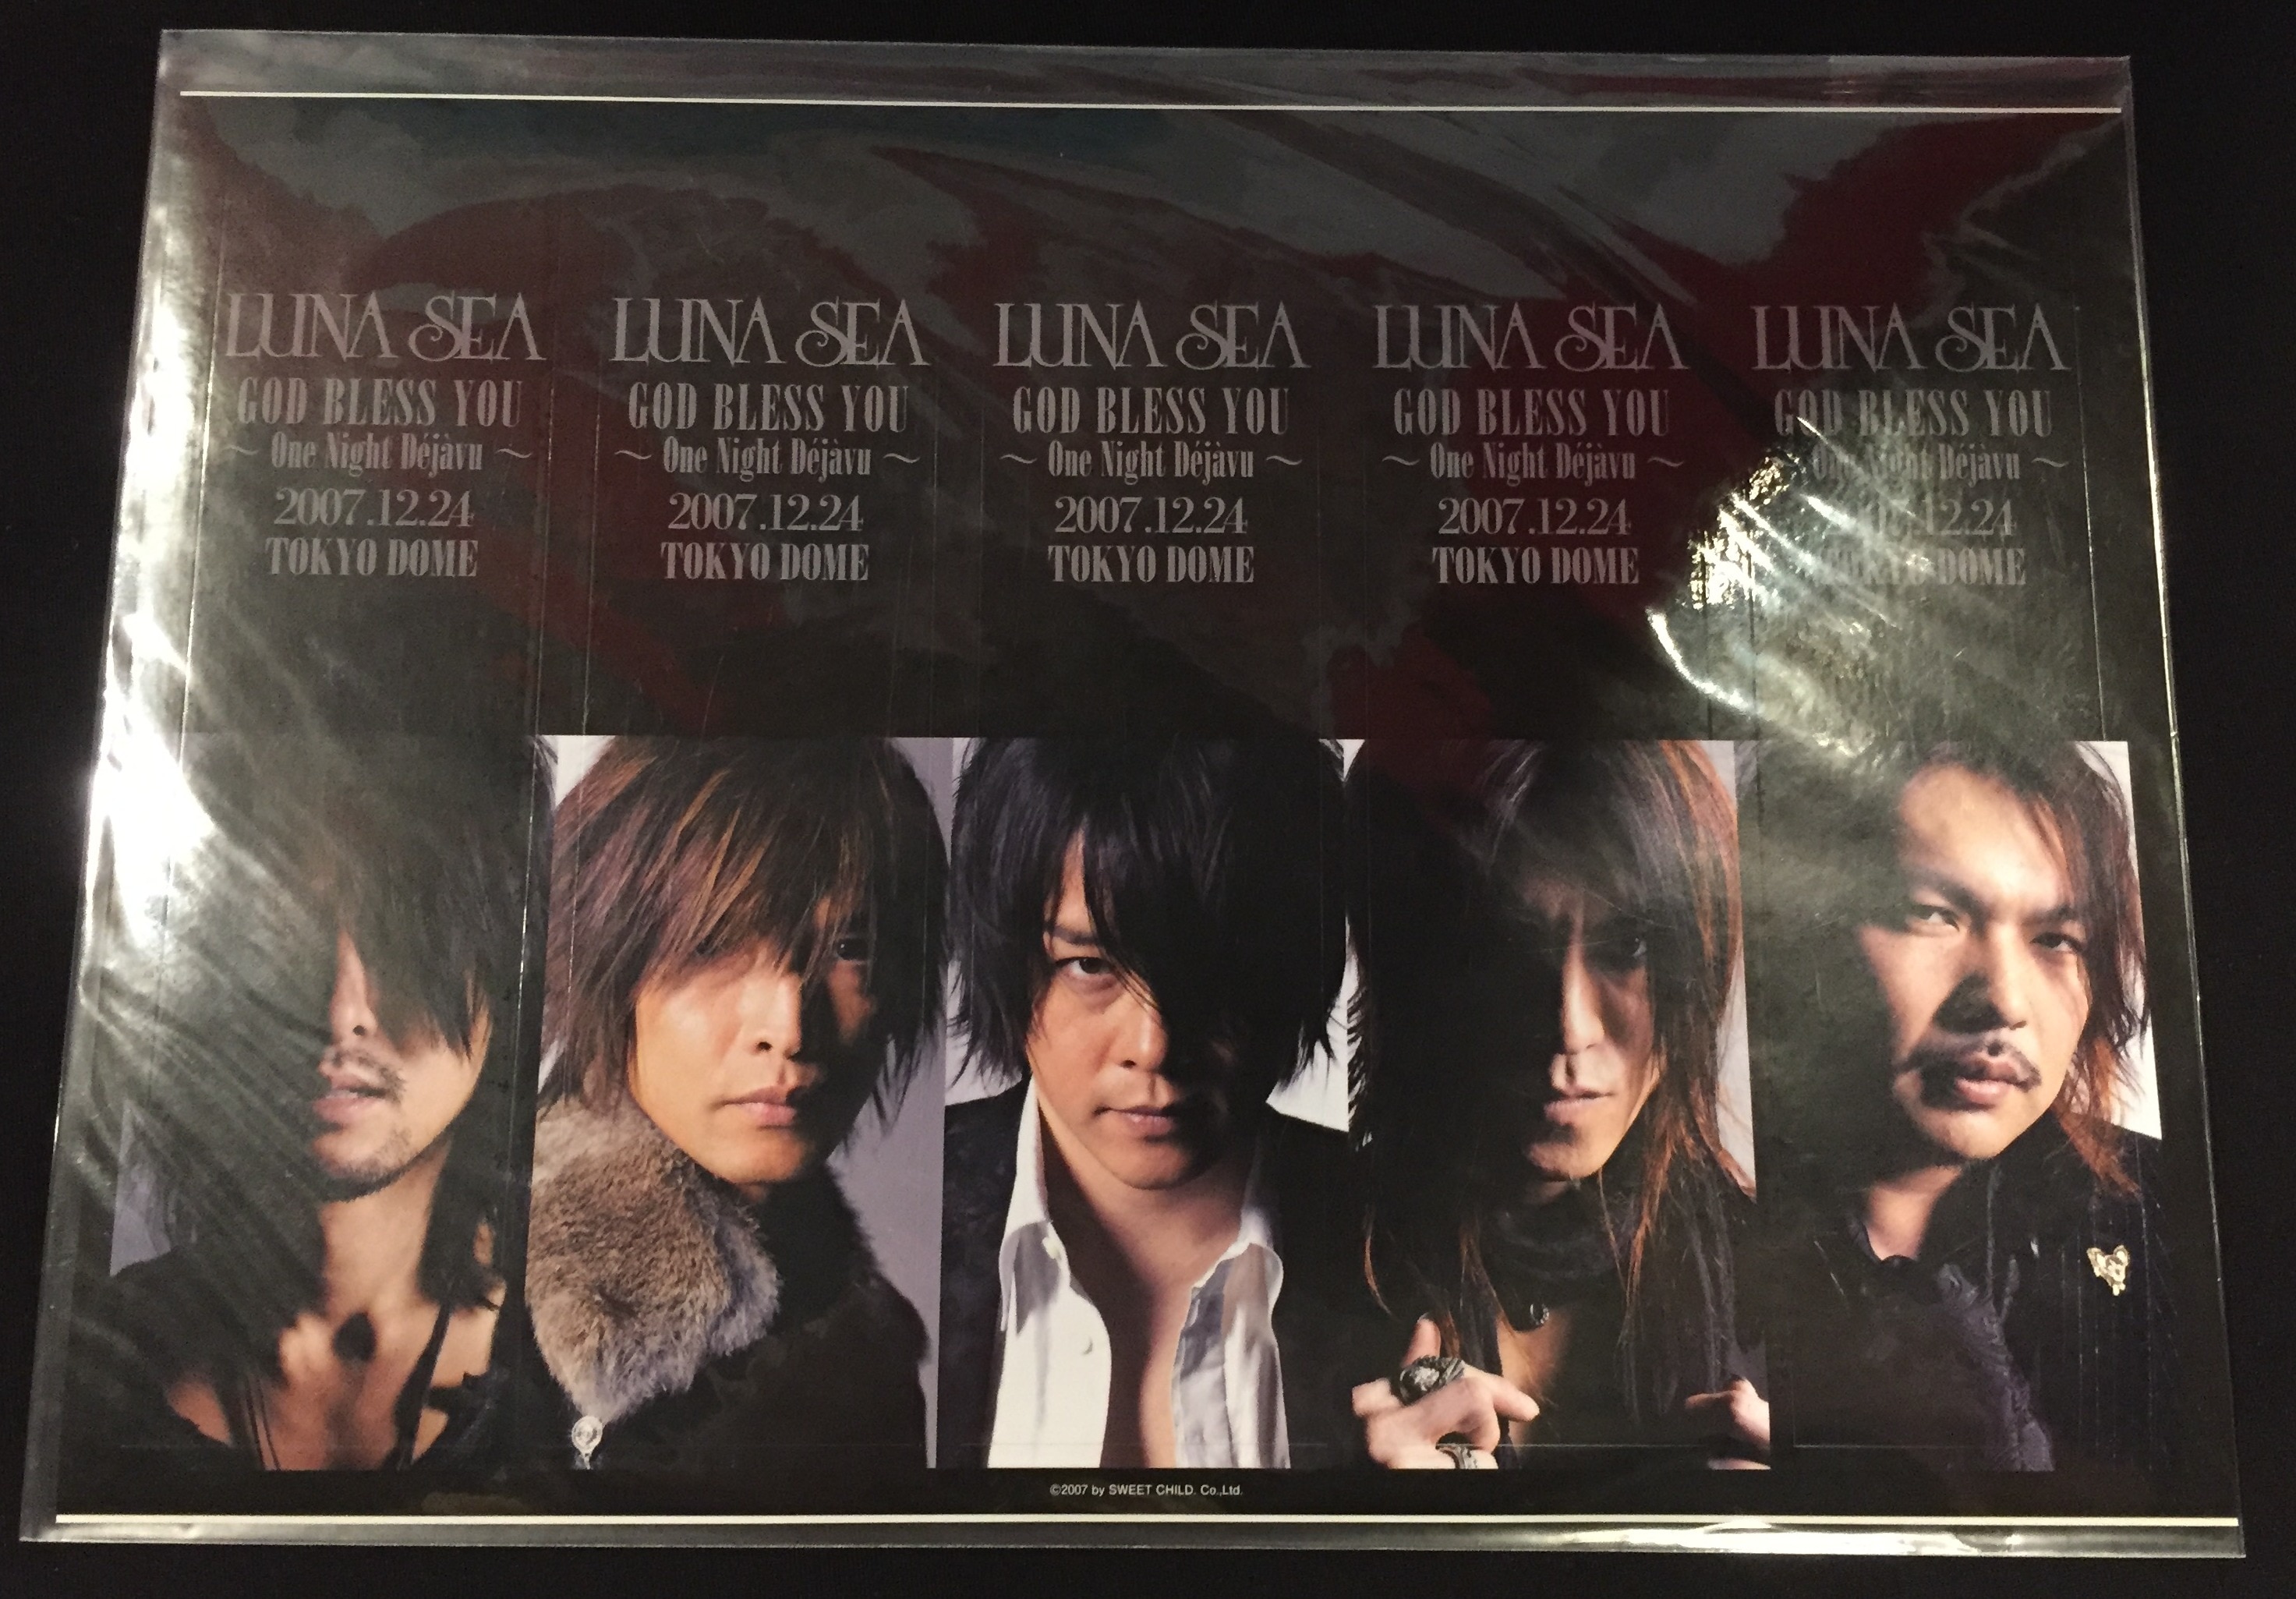 LUNA SEA GOD BLESS YOU ～One Night Dejavu～ 2007.12.24 TOKYO DOME